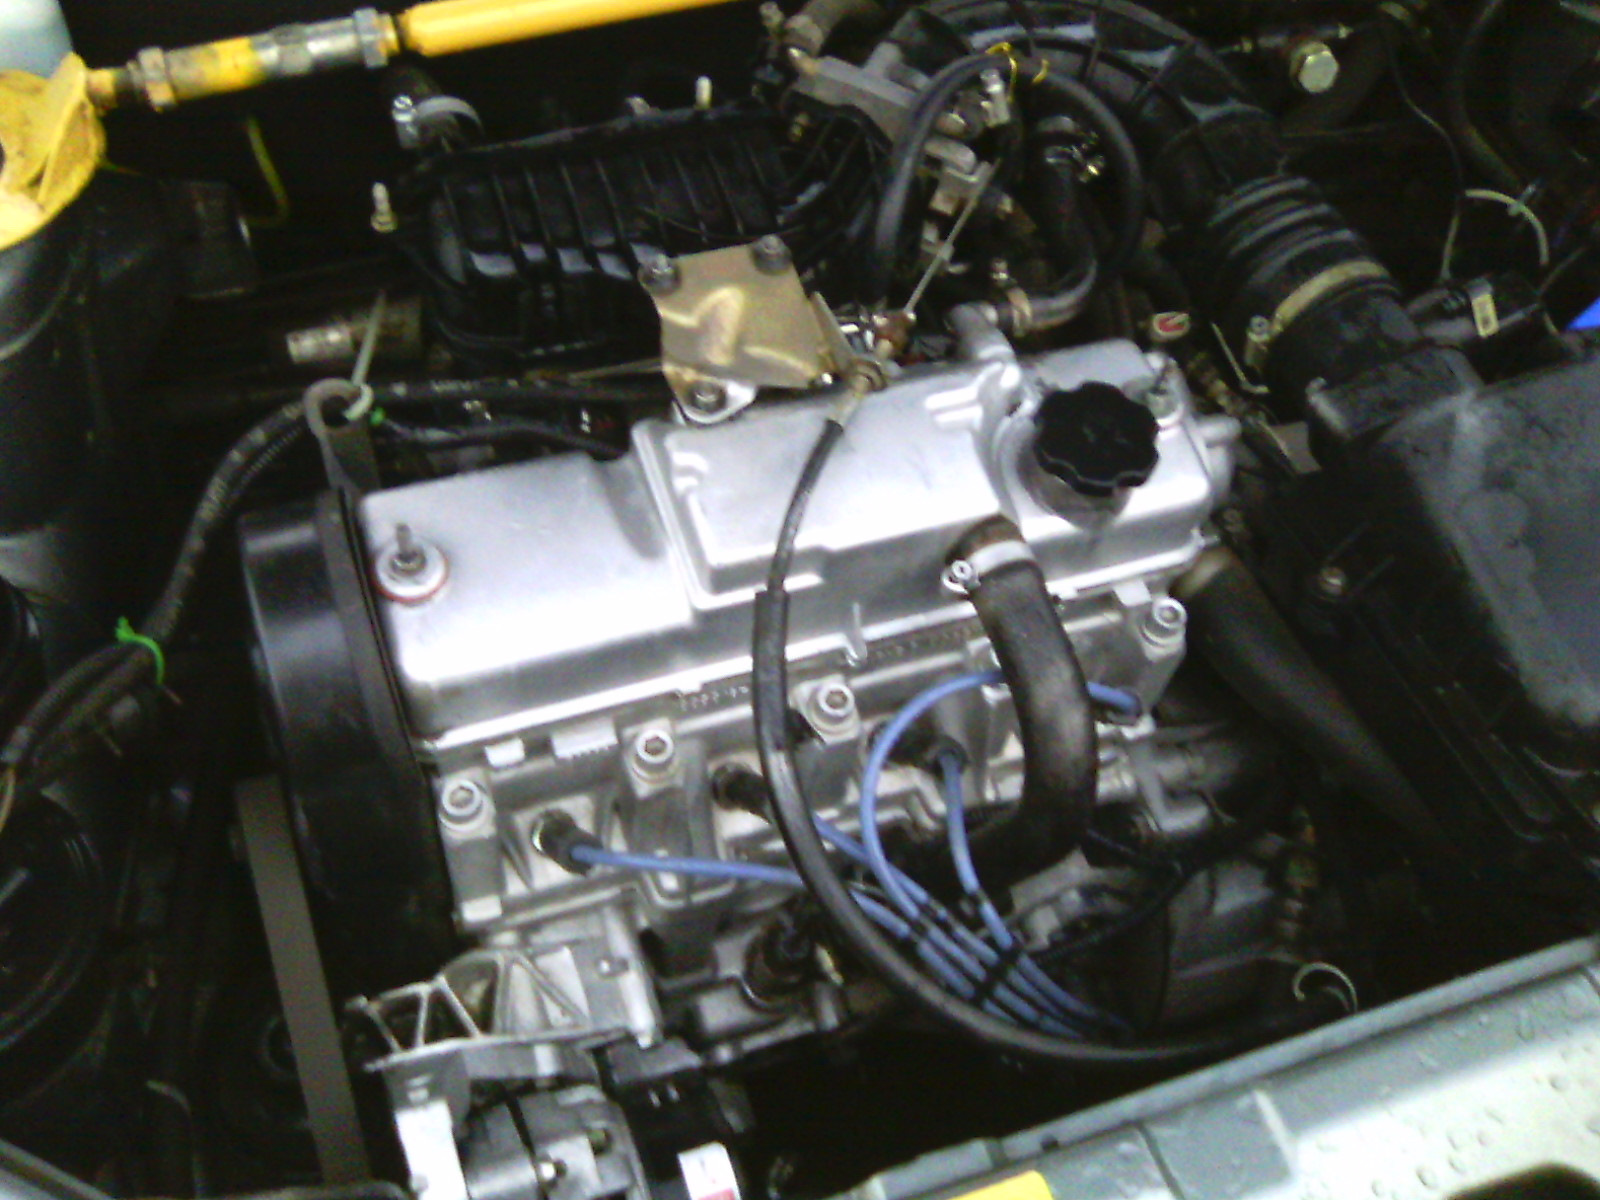 Новый двигатель ваз 2110 8 клапанов. ВАЗ 2110 1.6 8 клапанный. ВАЗ 2110 8 клапанный. Мотор 8 клапанный ВАЗ 2110. Движок 8 клапанный ВАЗ 2110.